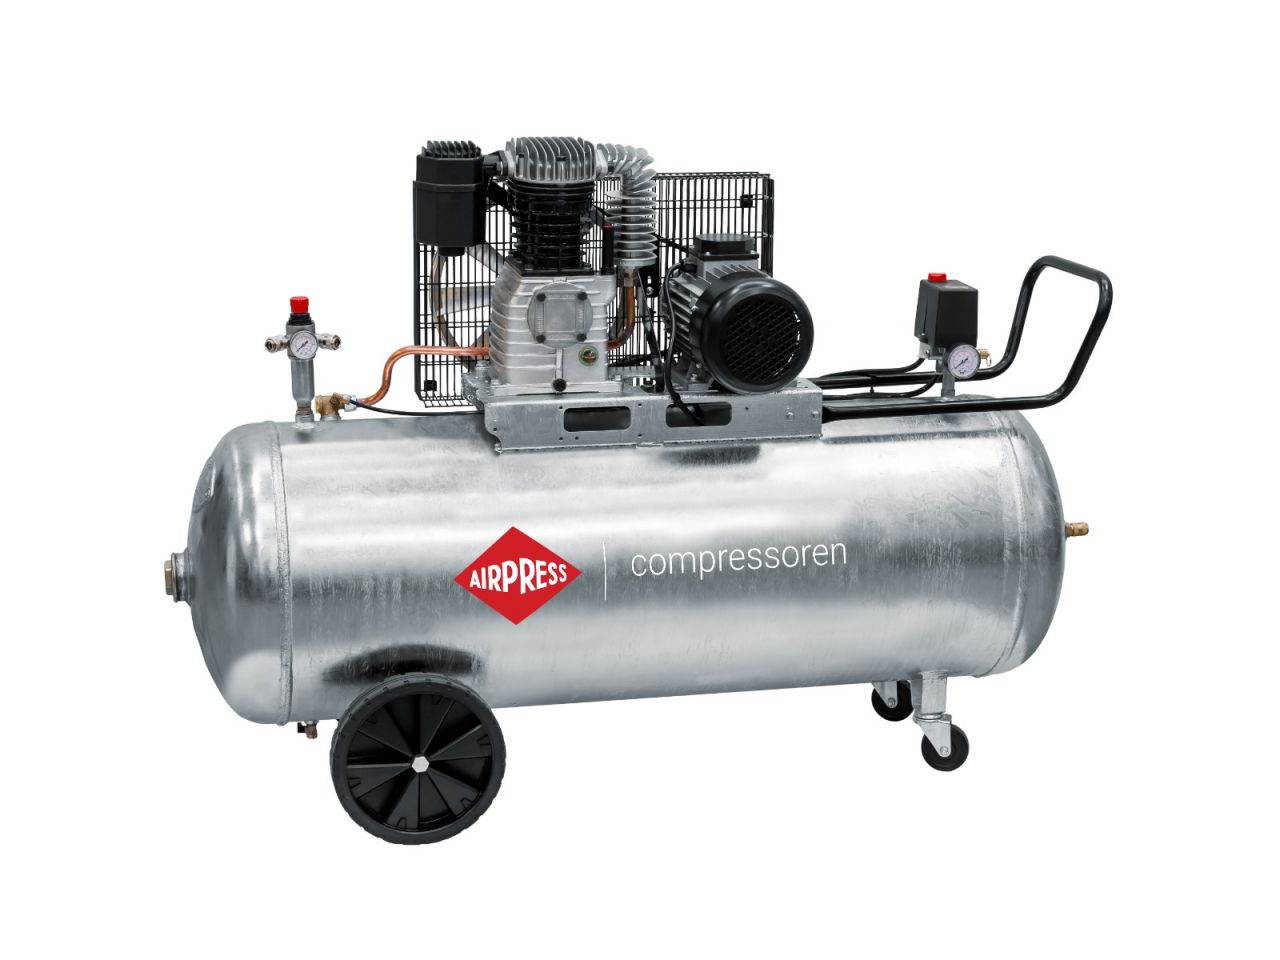 AIRPRESS Druckluft Kompressor L 6-45 leise 40db 8 Bar 6 Liter 0,3